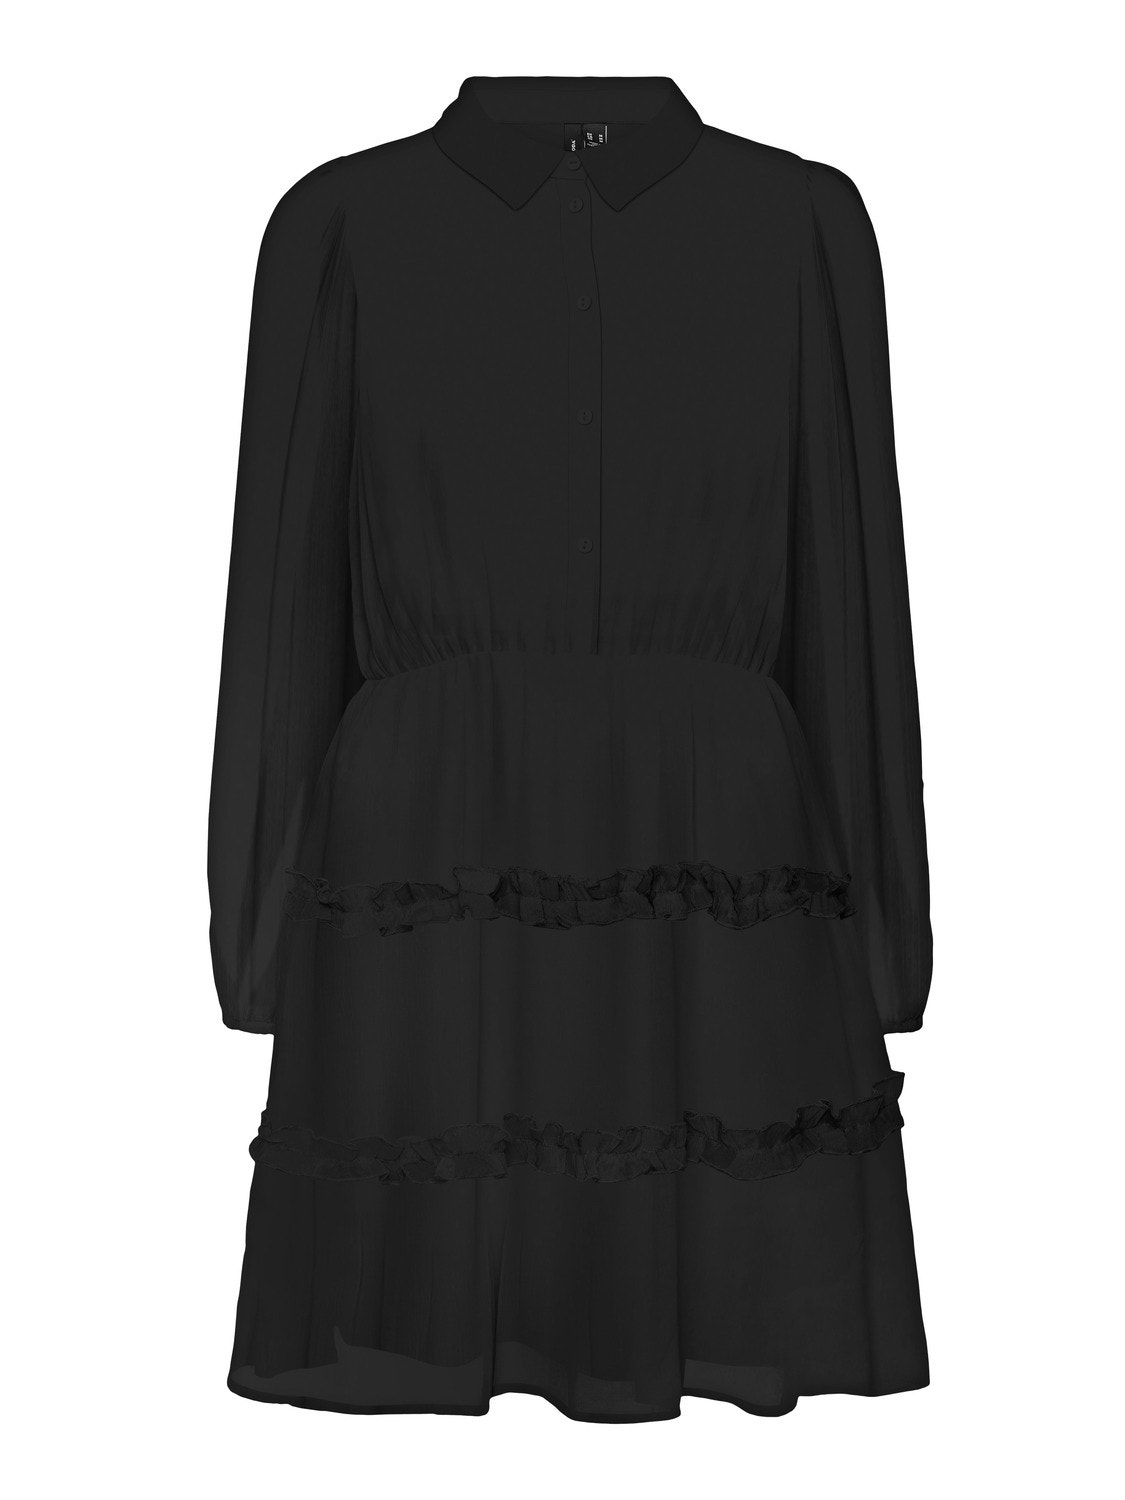 Vero Moda VMKAYA Short dress -Black - 10280893